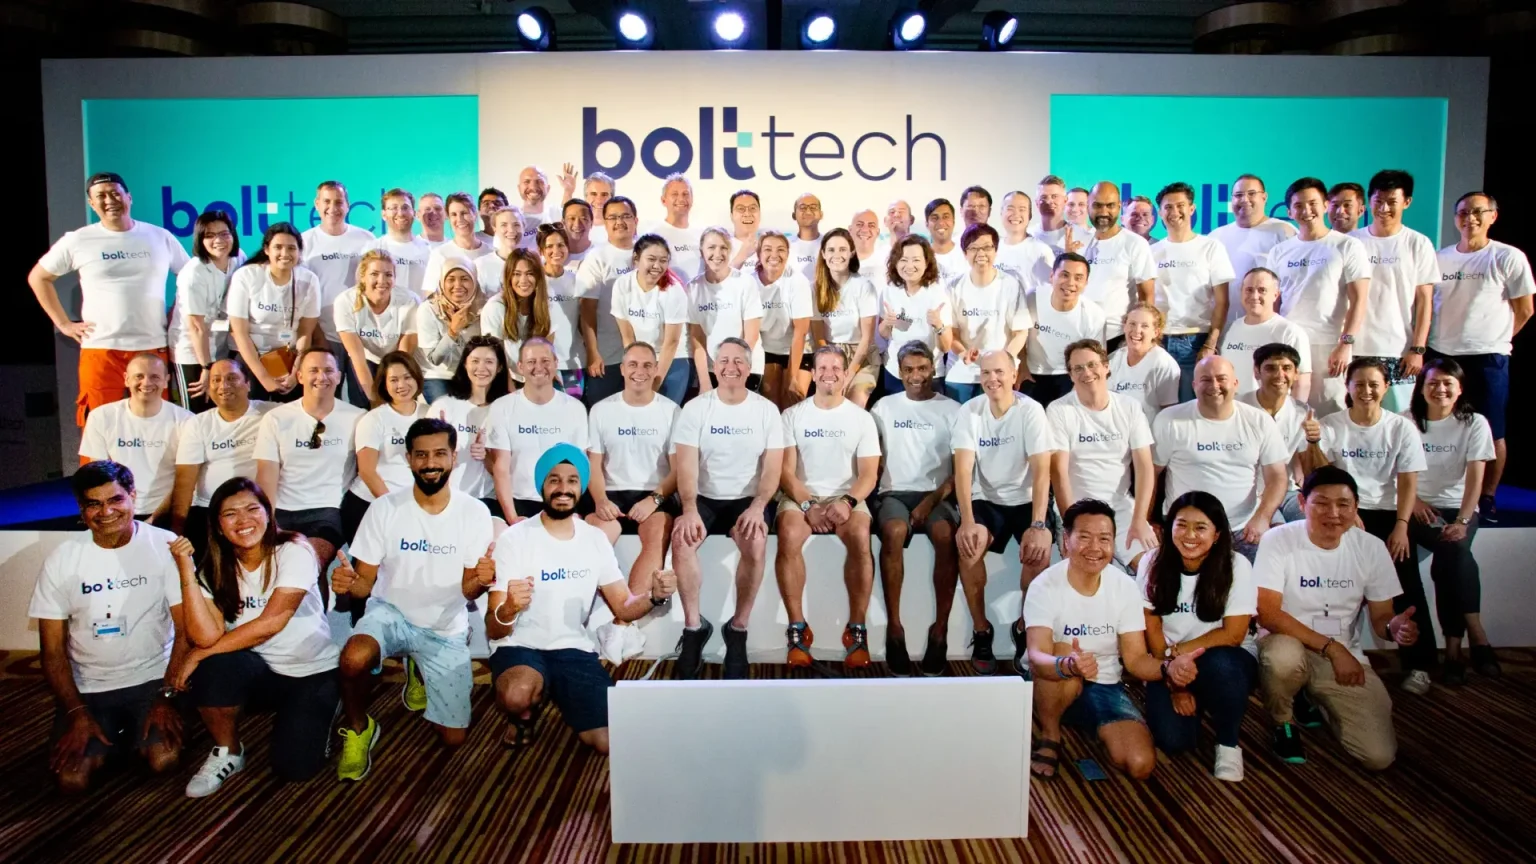 Sigorta hizmetleri sunan Bolttech, 196 milyon dolar yatırım aldı